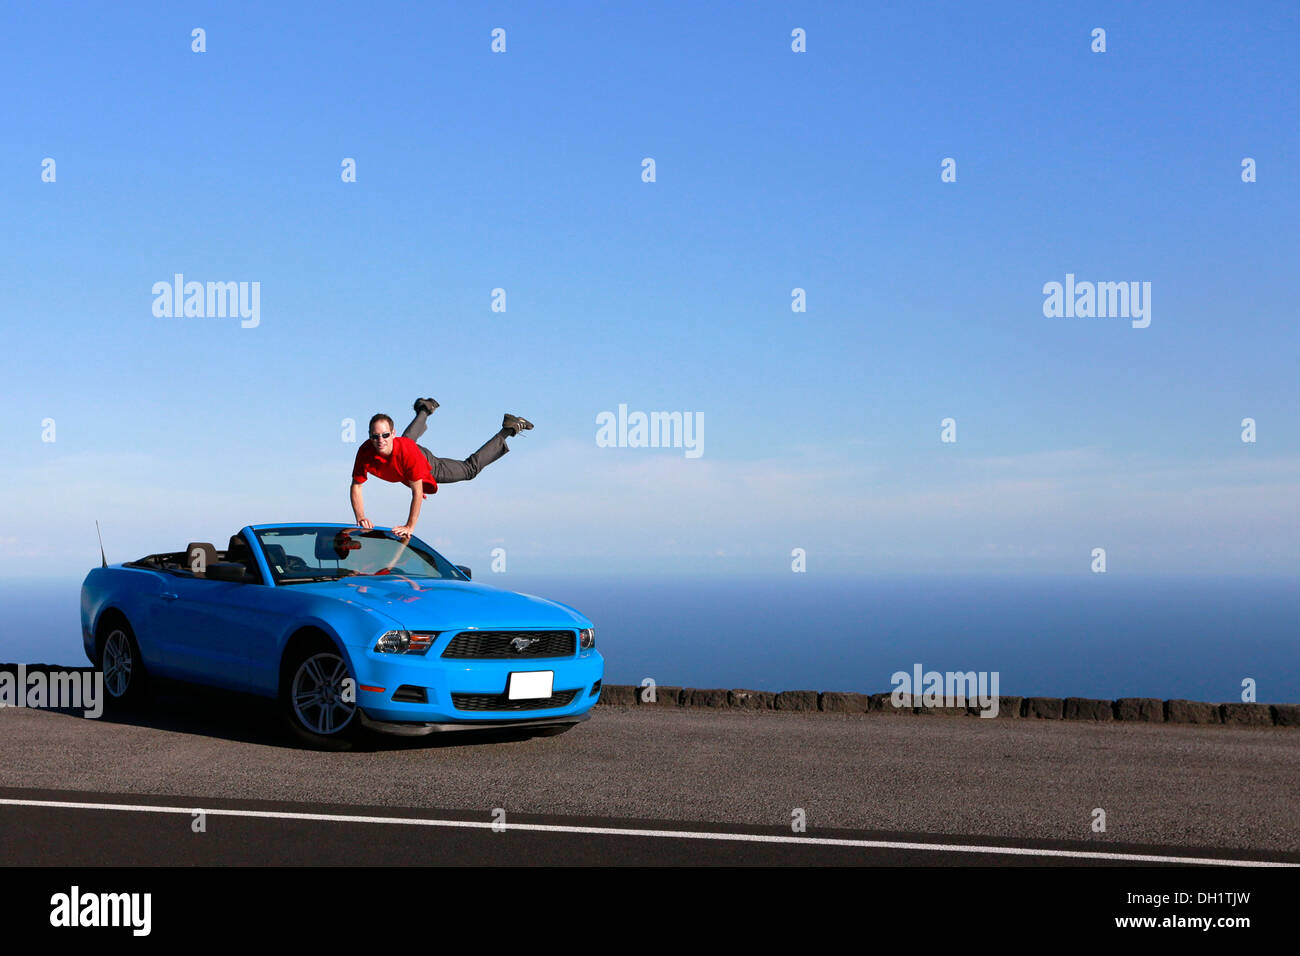 L'uomo jumping con gioia in un cielo-blu Ford Mustang Convertible dal mare, grande isola, Hawaii, STATI UNITI D'AMERICA Foto Stock